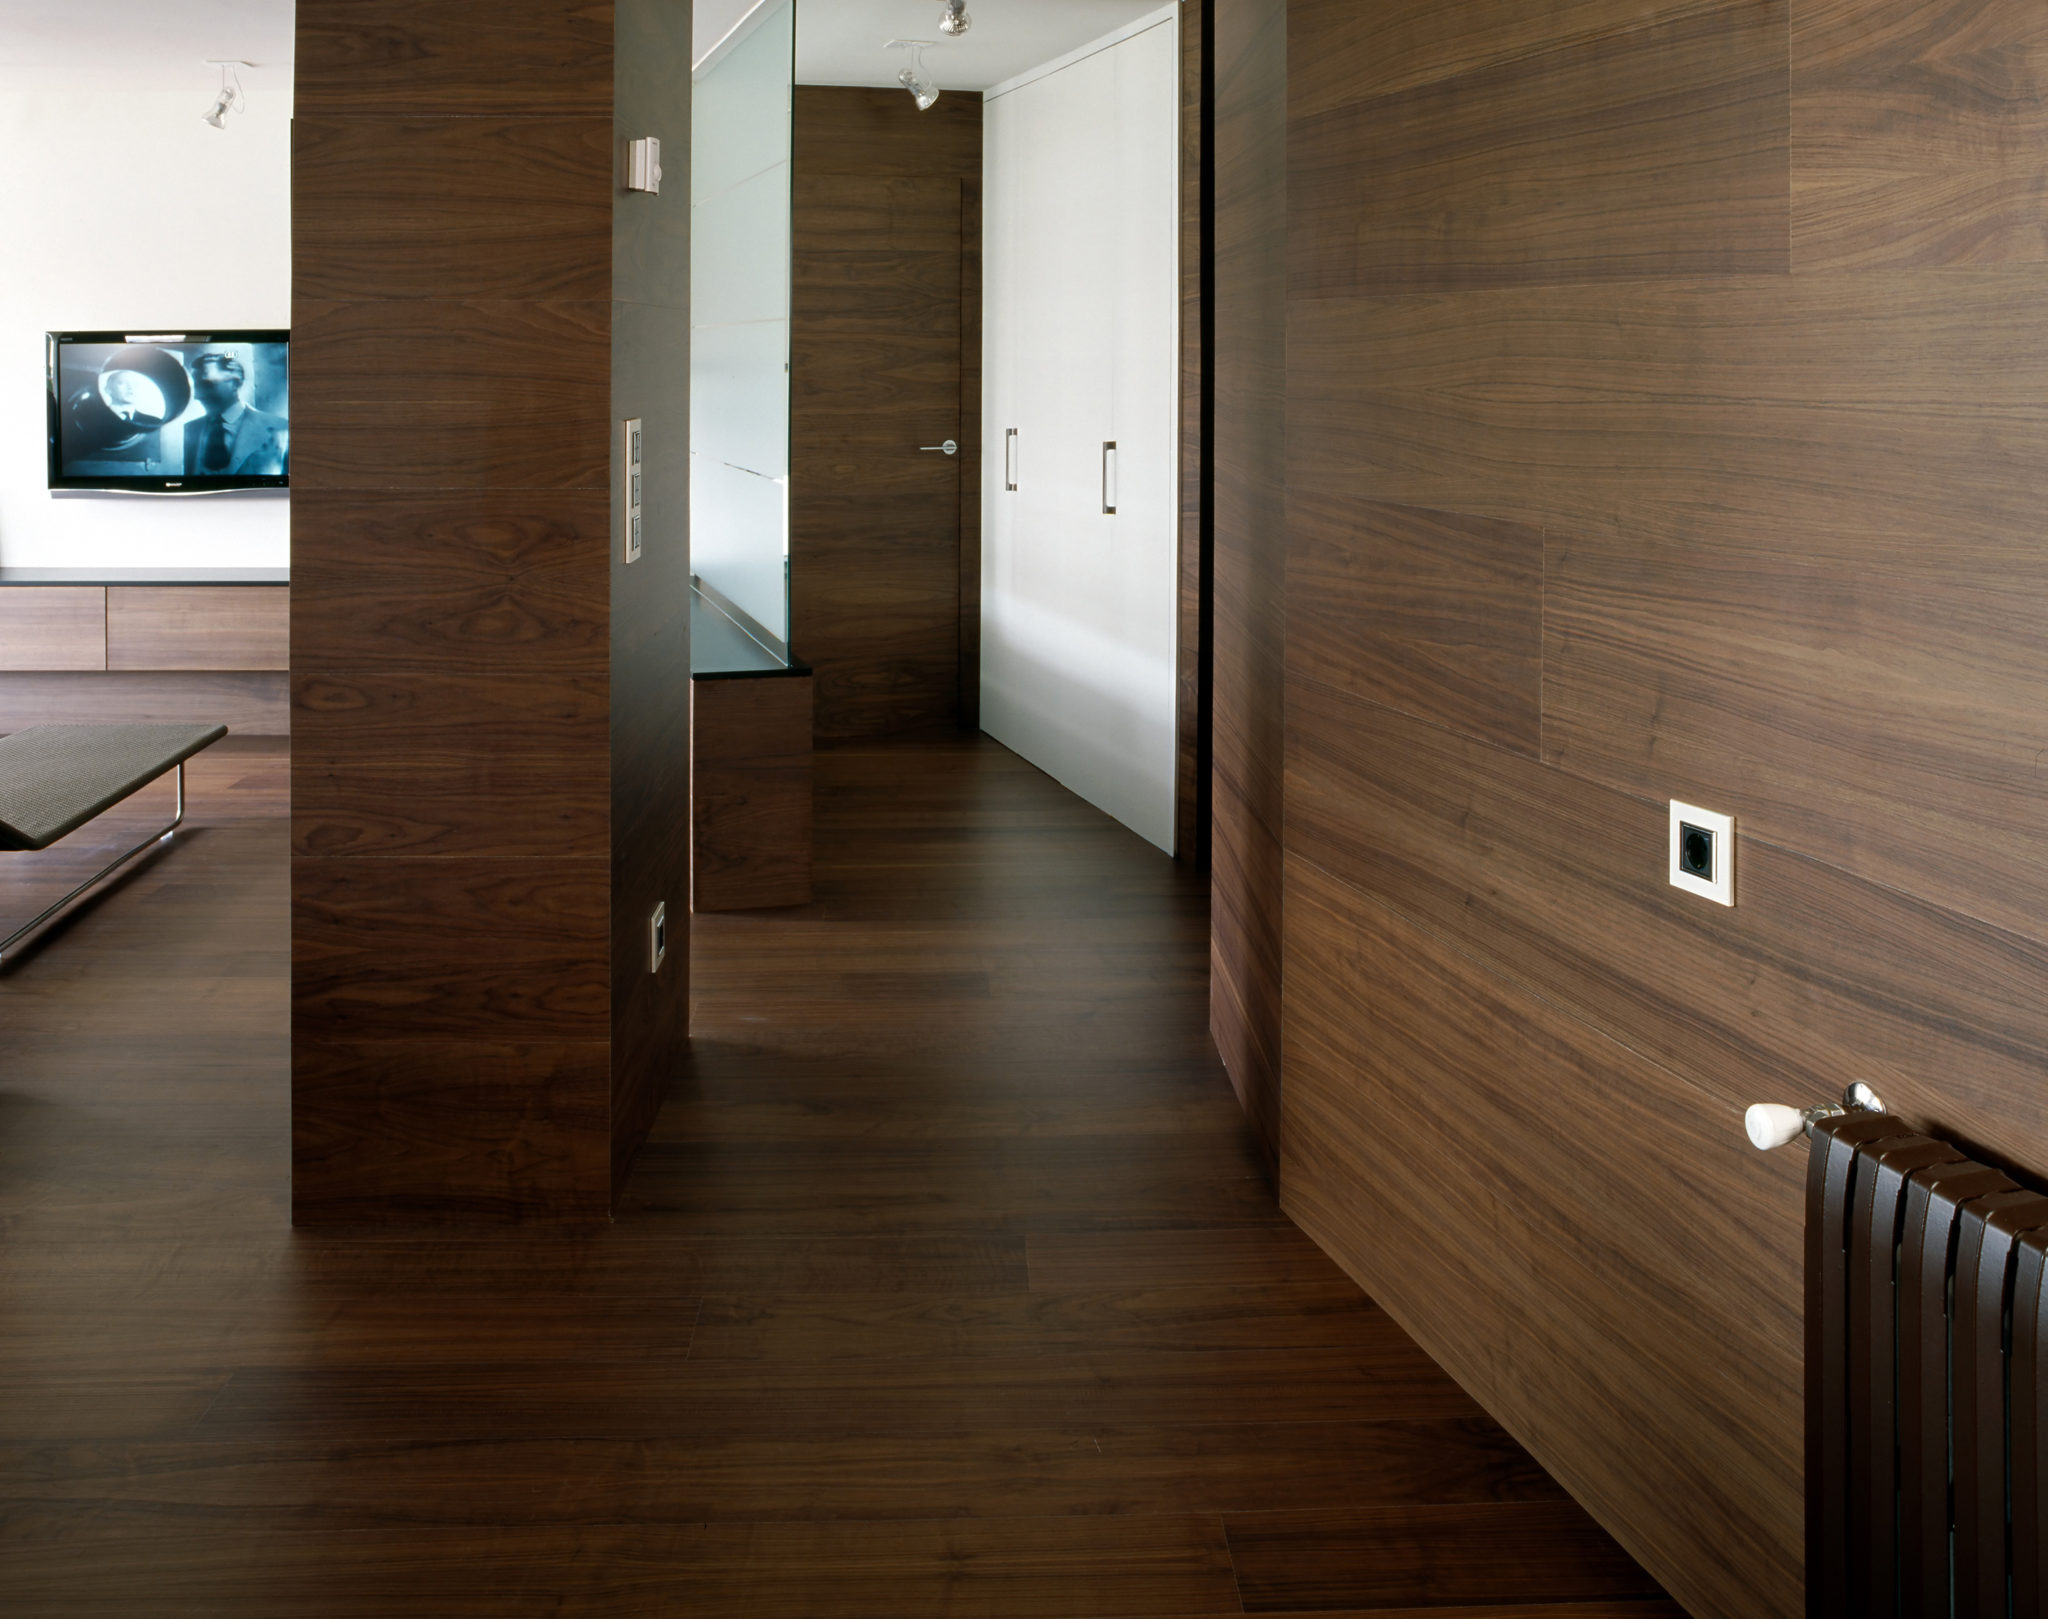 Стены в квартире: чем отделывать коридор и другие помещения кроме обоев?